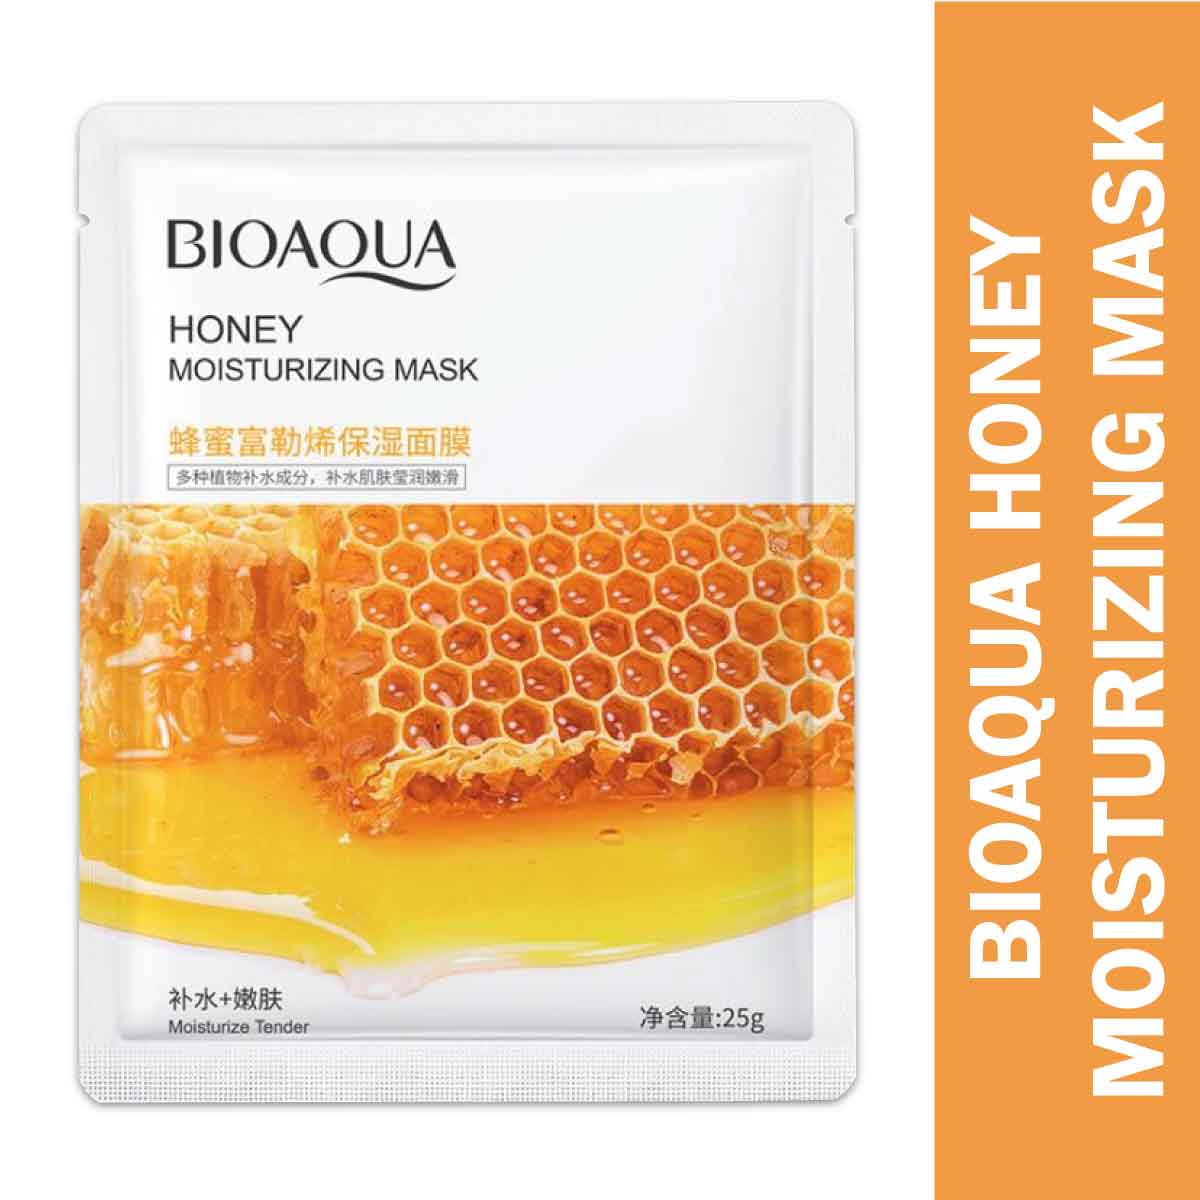 Bioaqua Honey Moisturizing Sheet Mask - 25G Honey Moisturizing Mask